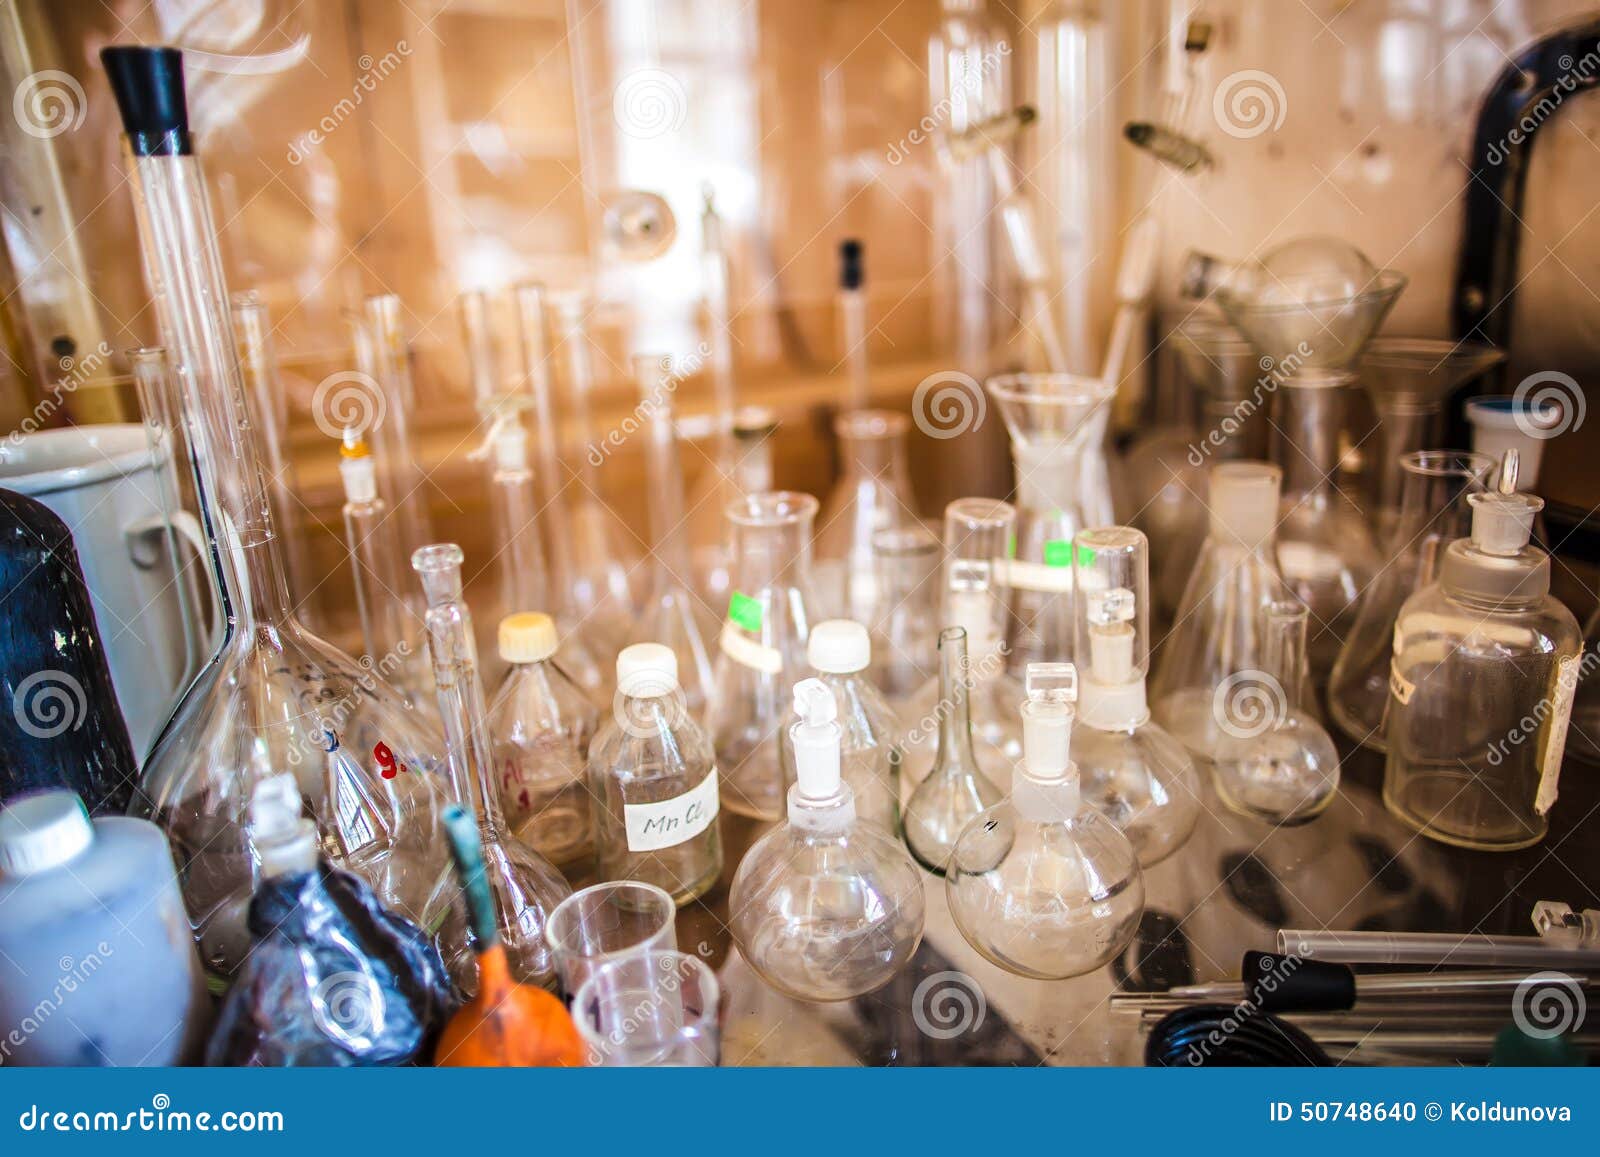 Колбы с реагентами игра. Лаборатория колбы. Колбы для химической лаборатории. Химический стол с колбами. Лаборатория стол с пробирками.